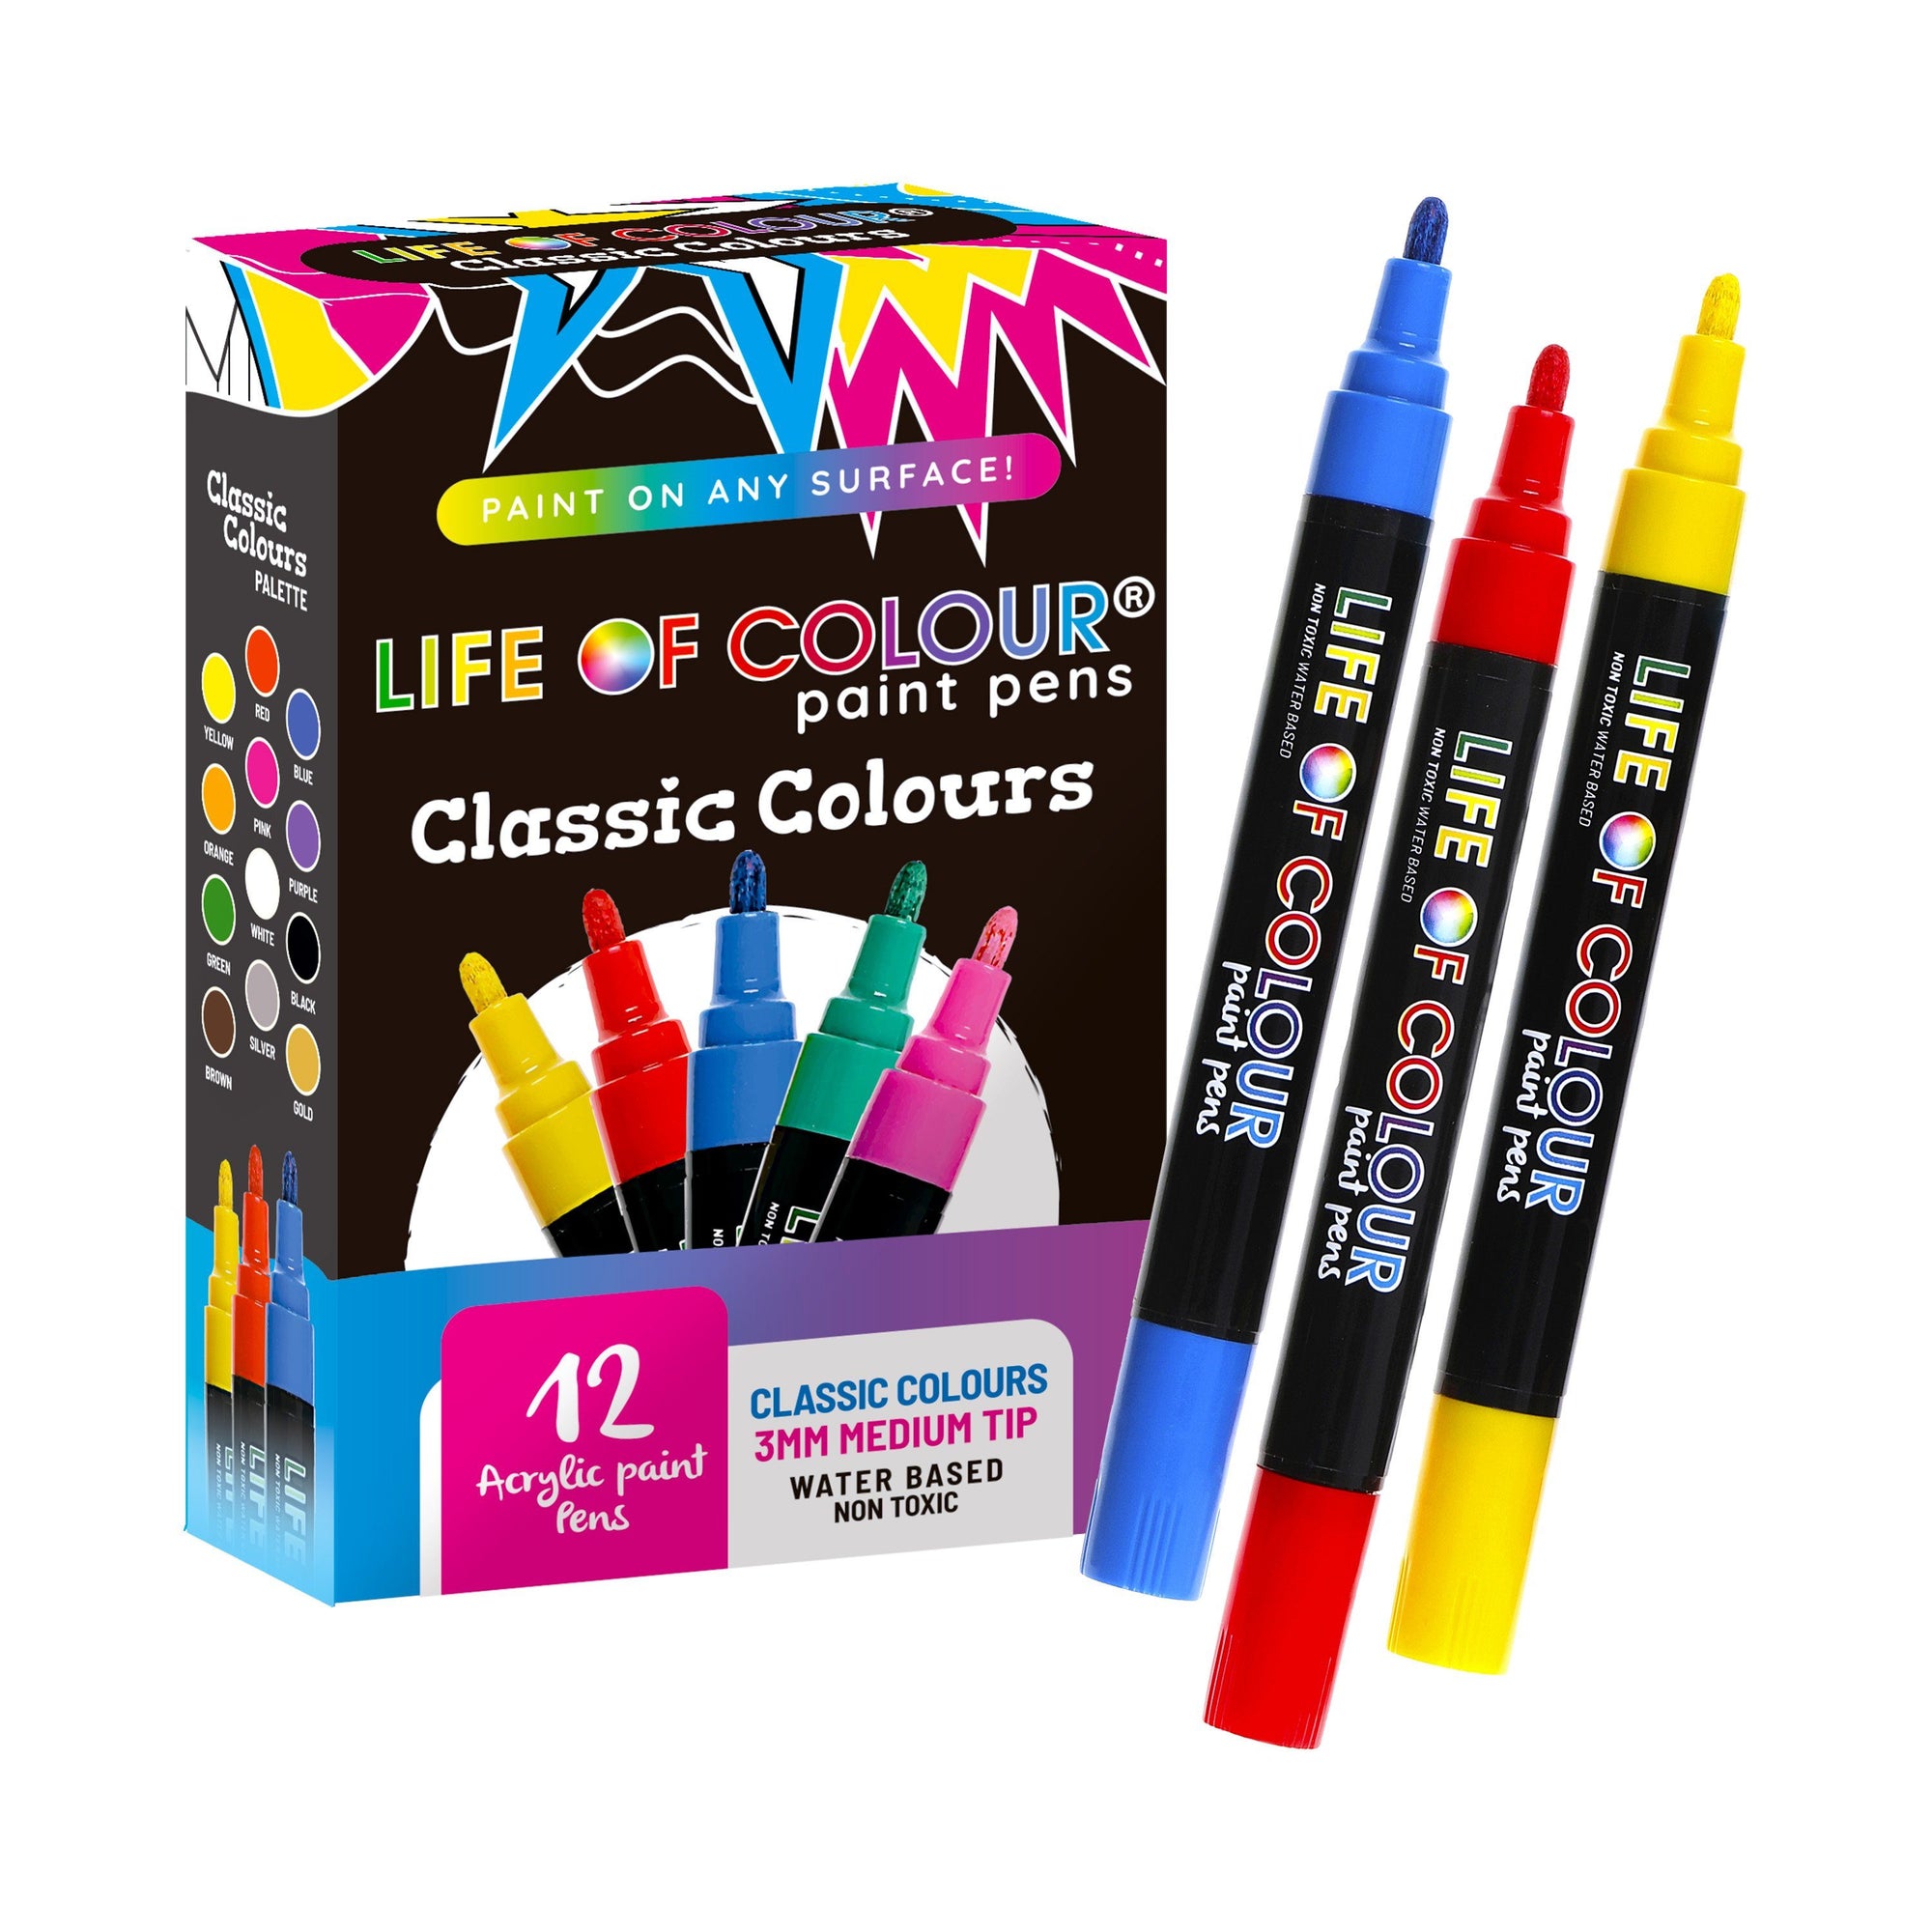 Classic Colour Paint Pens - Medium Tip Pen Sets Life of Colour